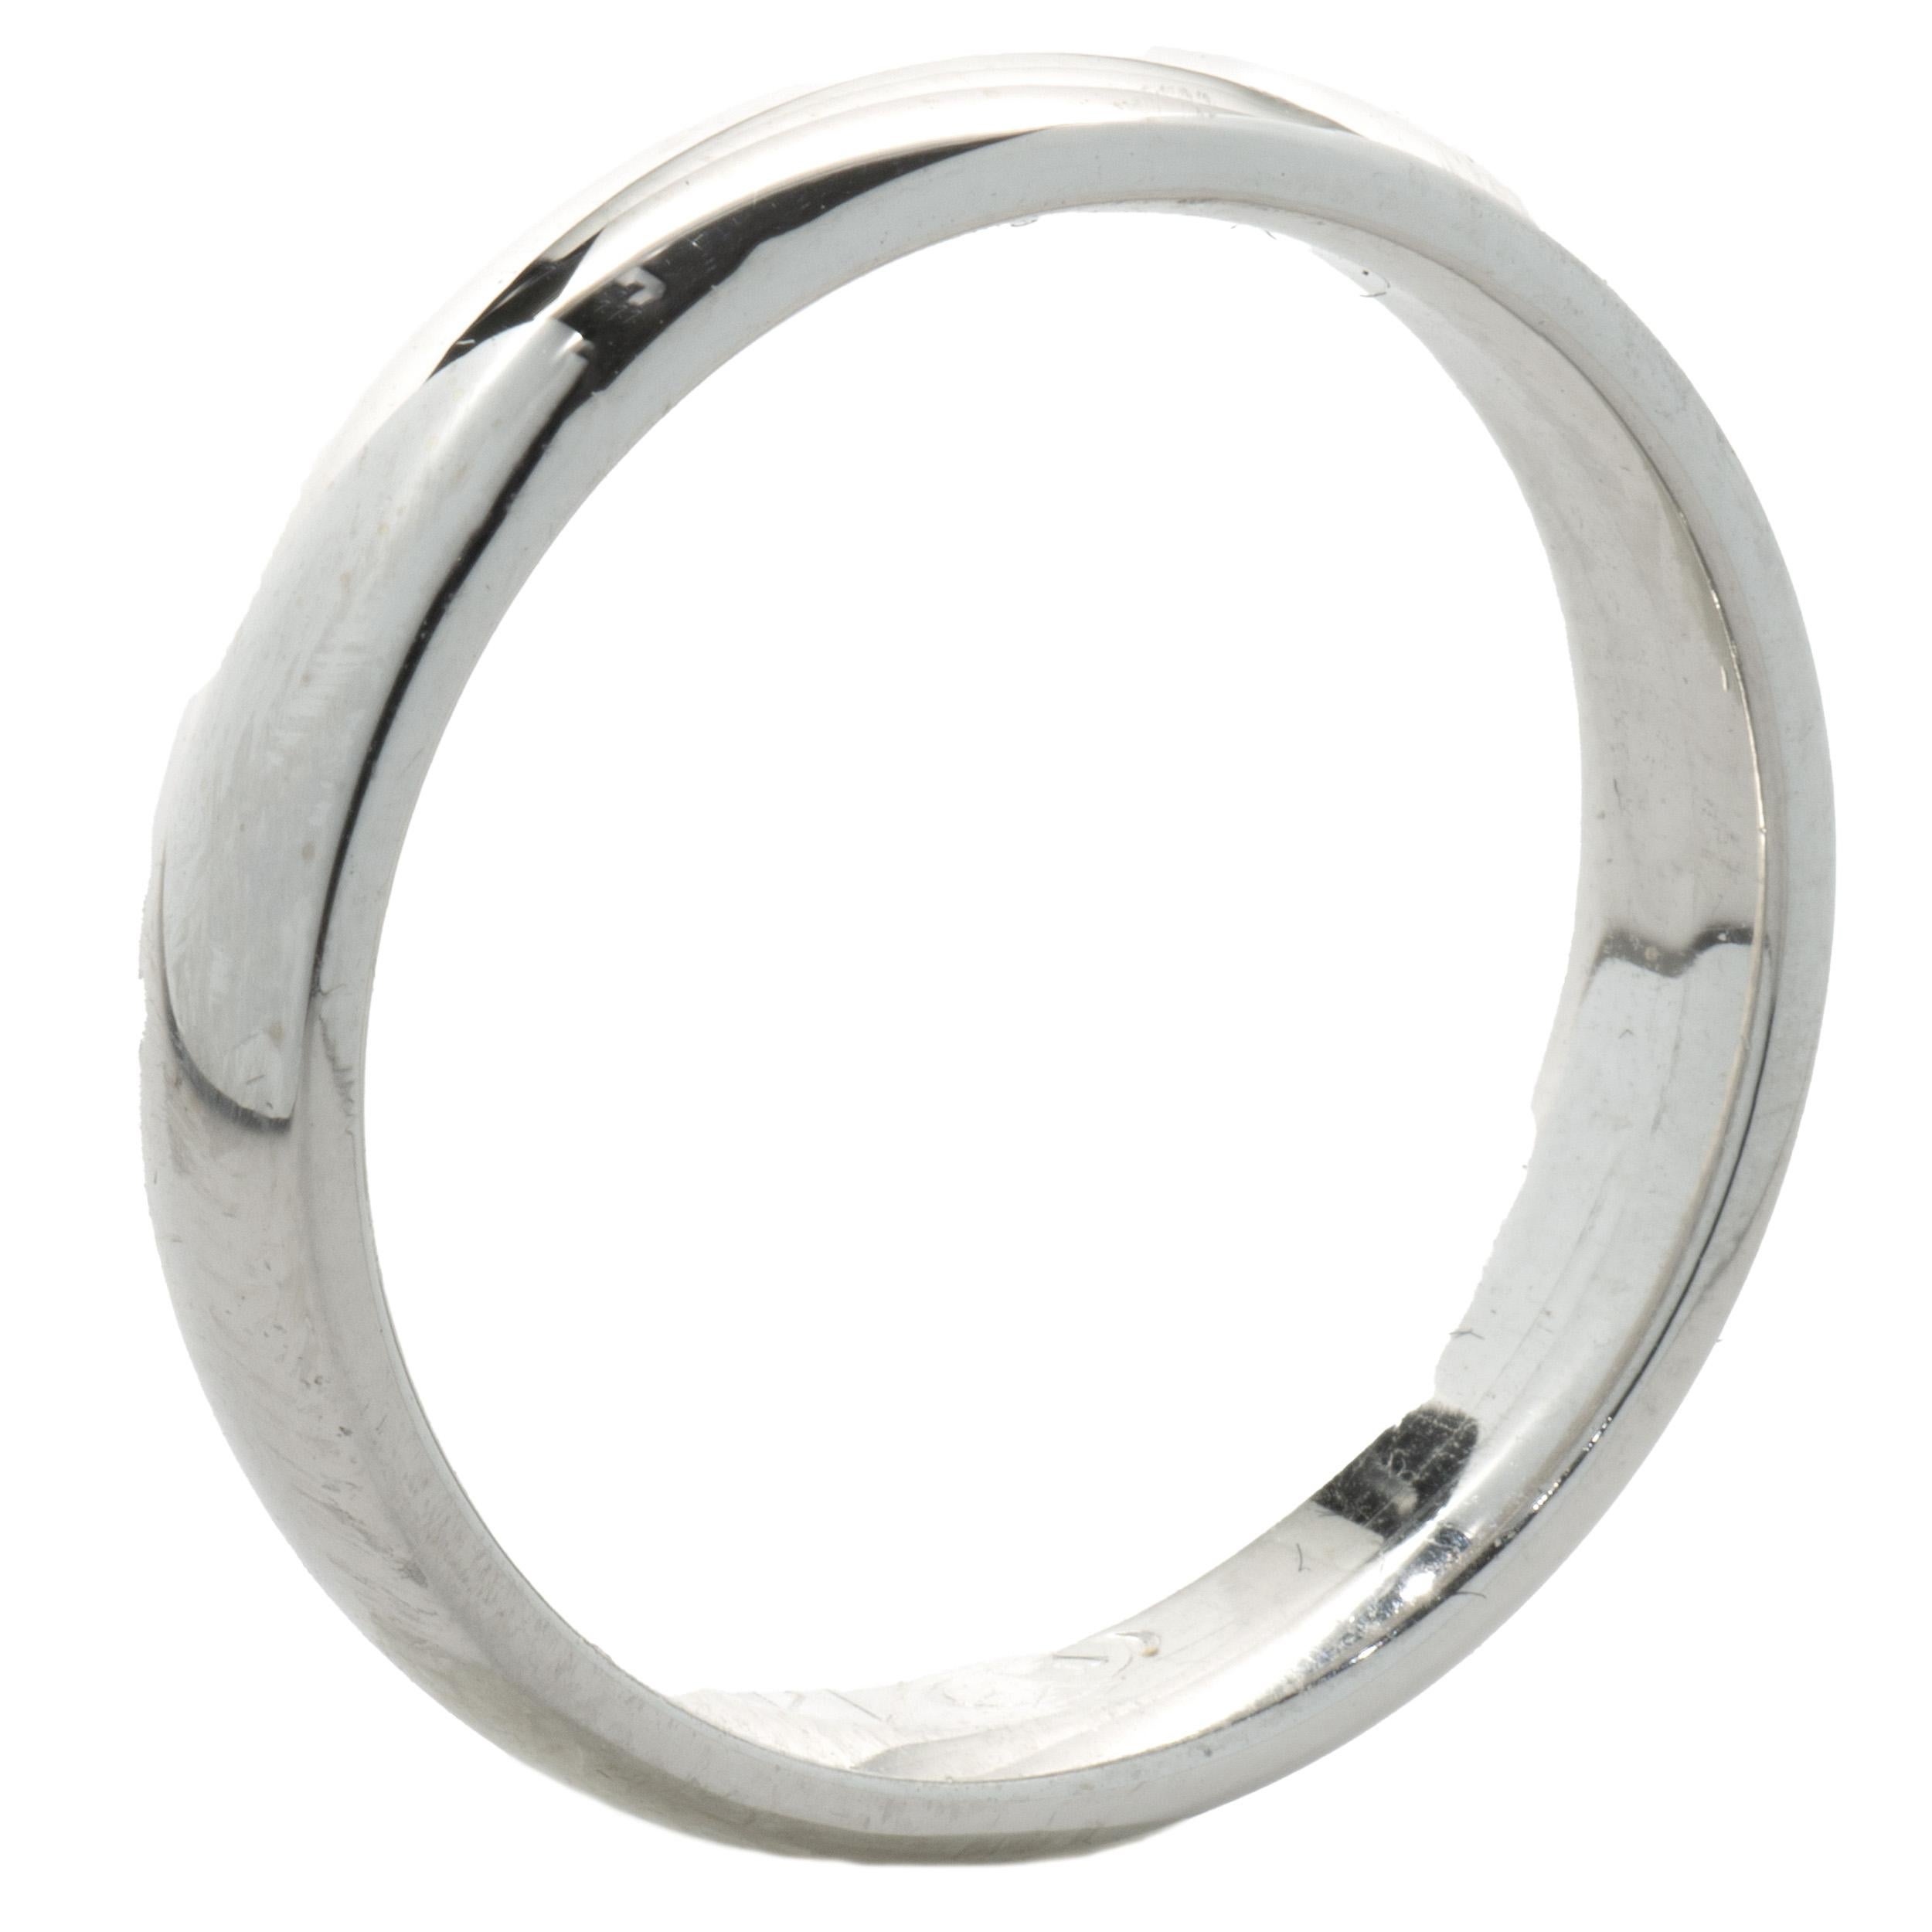 Designer: kundenspezifisch
MATERIAL: 14K Weißgold
Abmessungen: Ring ist 4 mm breit
Größe: 5,75
Gewicht: 3.96 Gramm